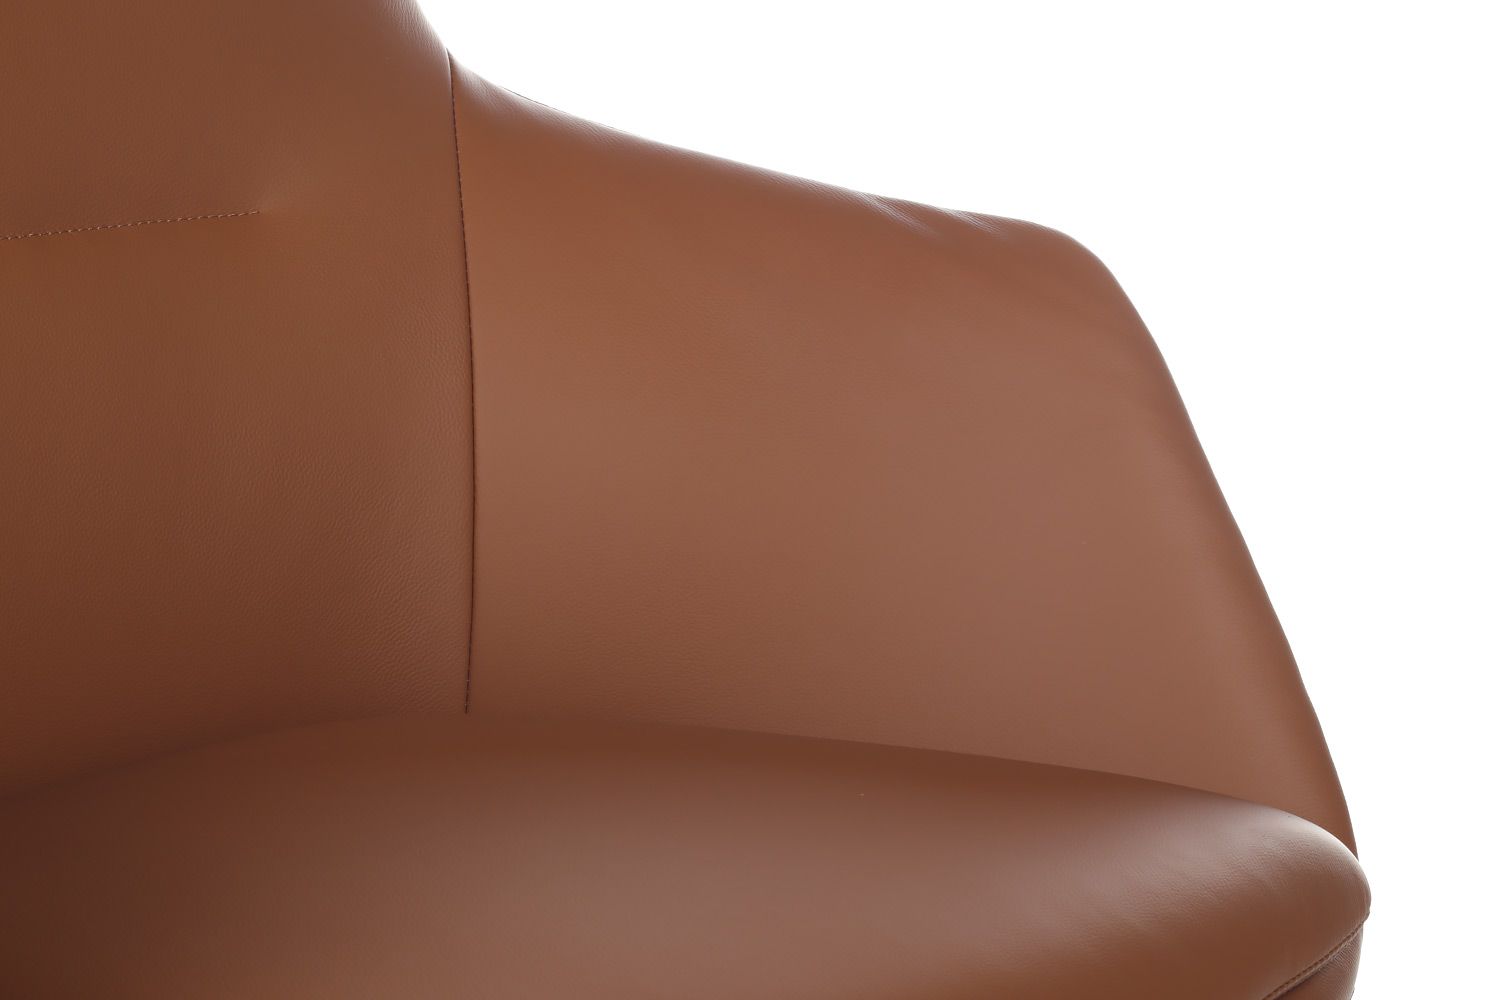 Офисное кресло из натуральной кожи RIVA DESIGN Soul-ST (С1908) светло-коричневый